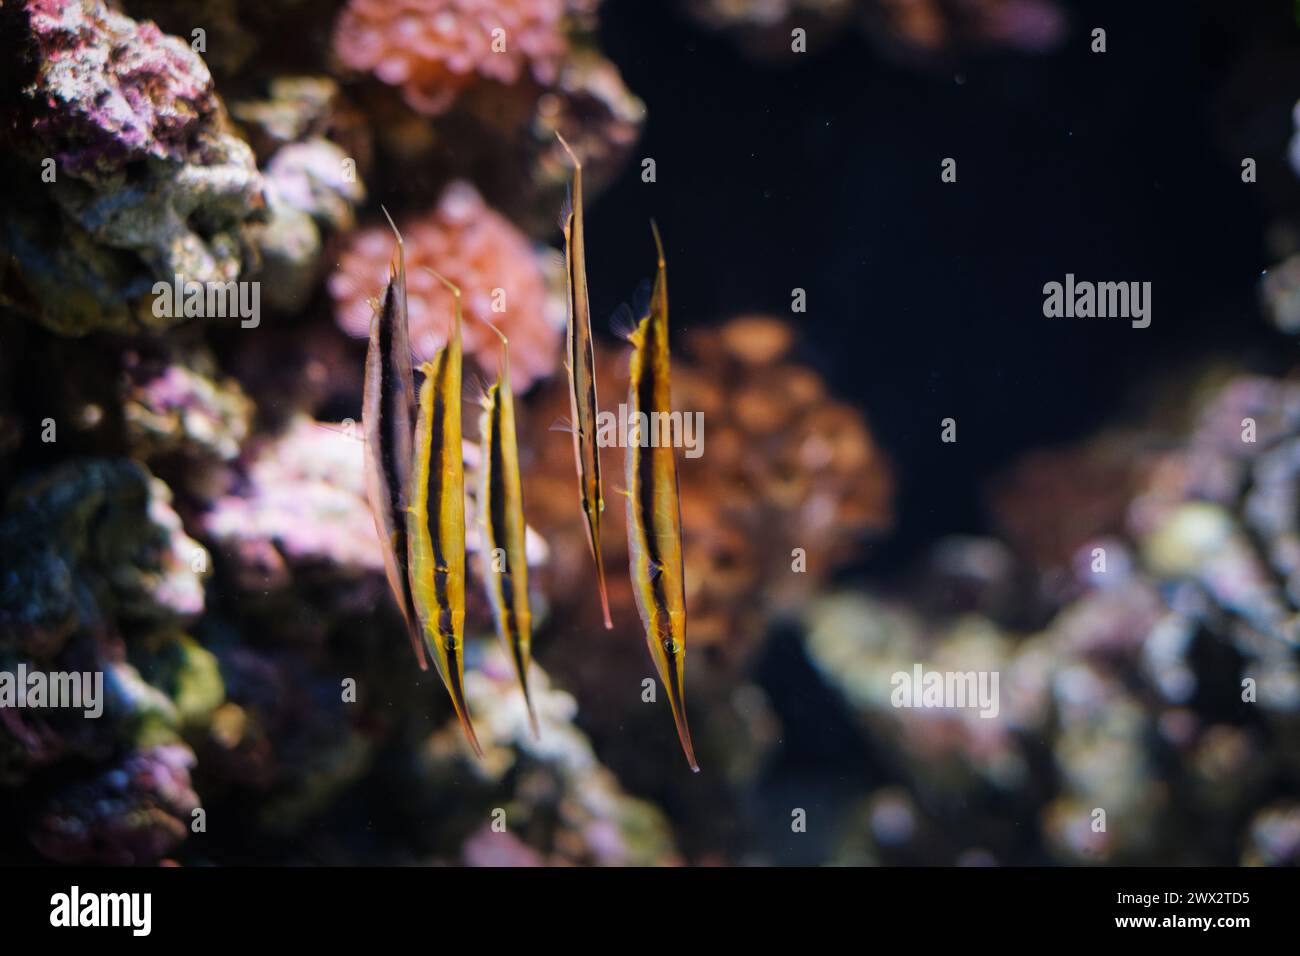 Razorfish Aeoliscus strigatus fish in sea Stock Photo